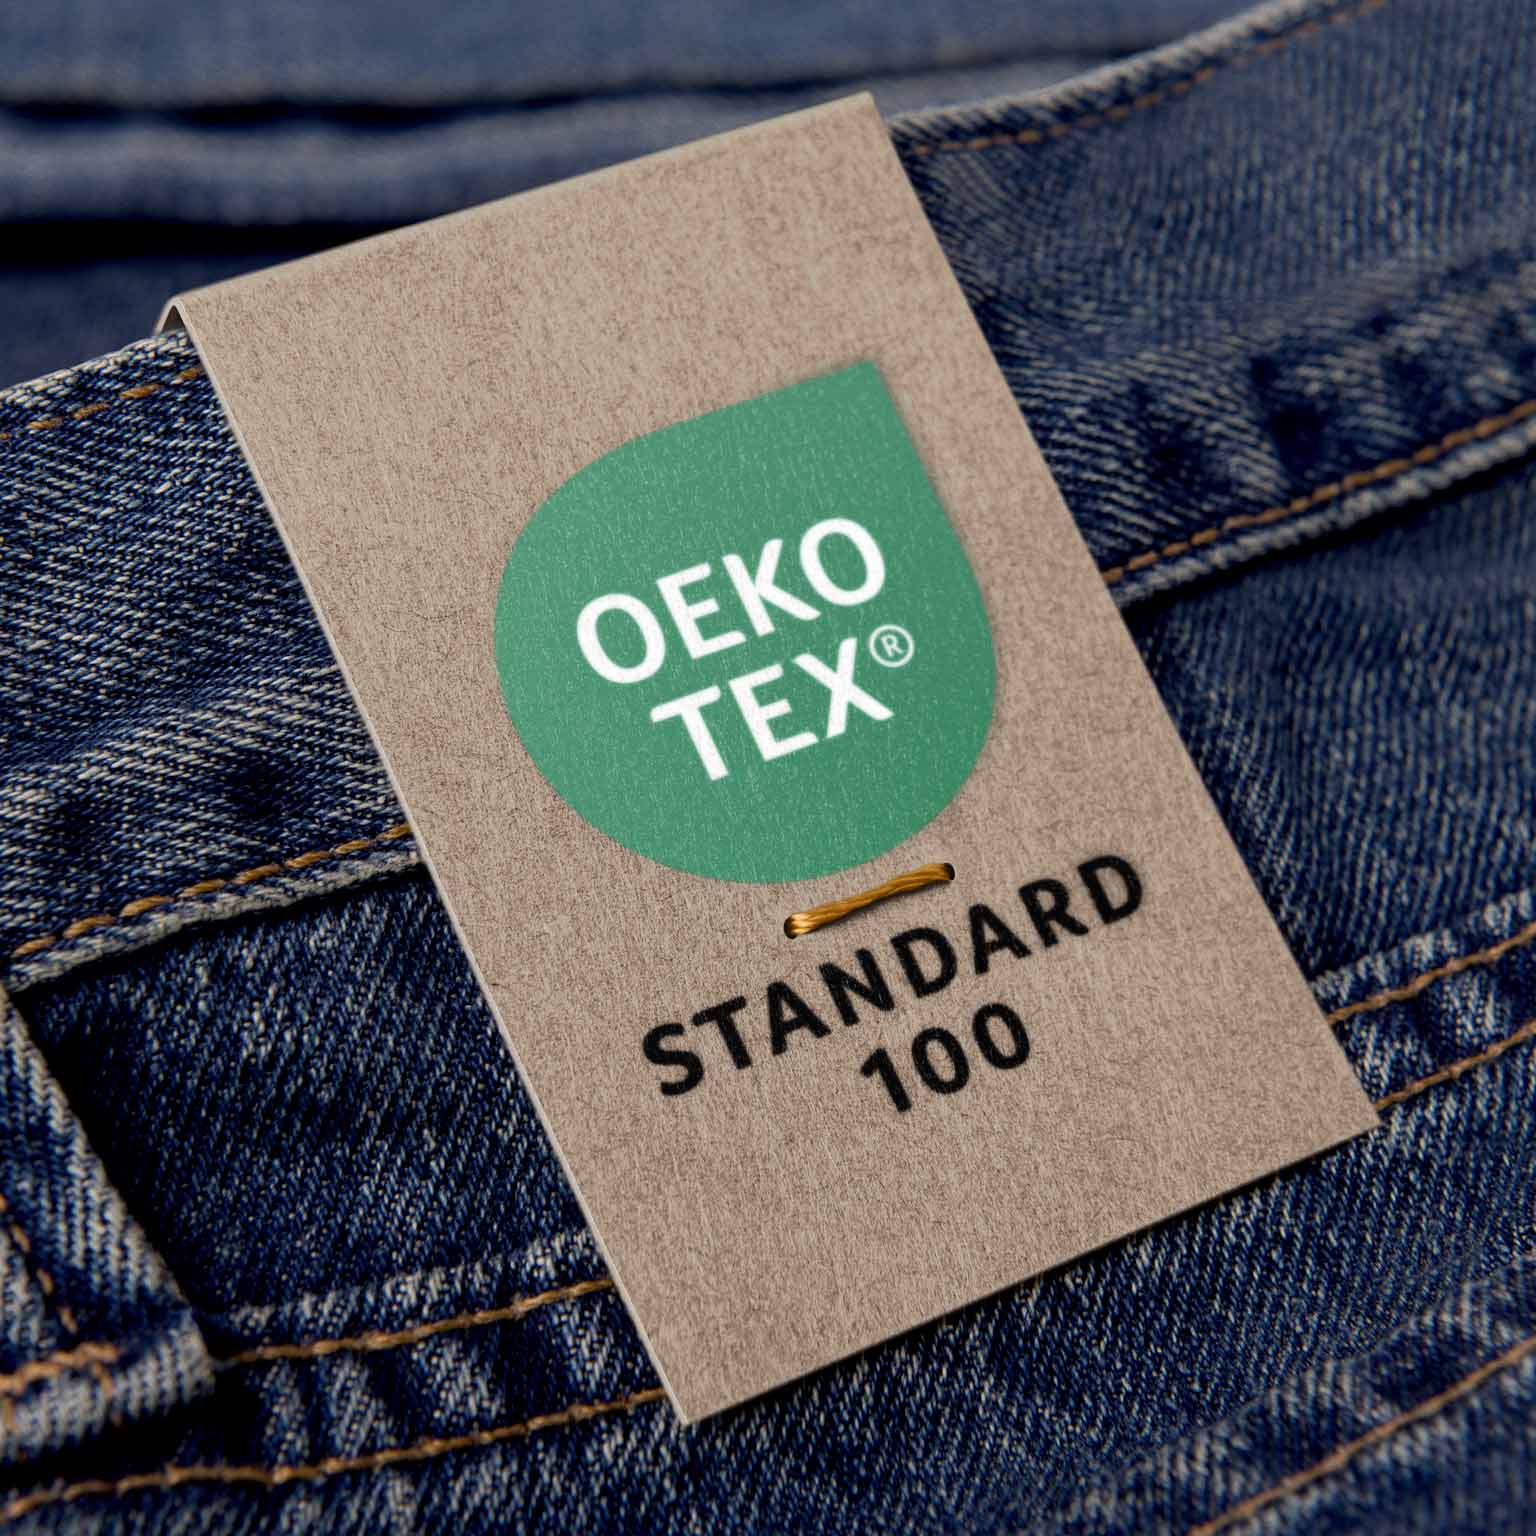 OEKO-TEX-label.jpg